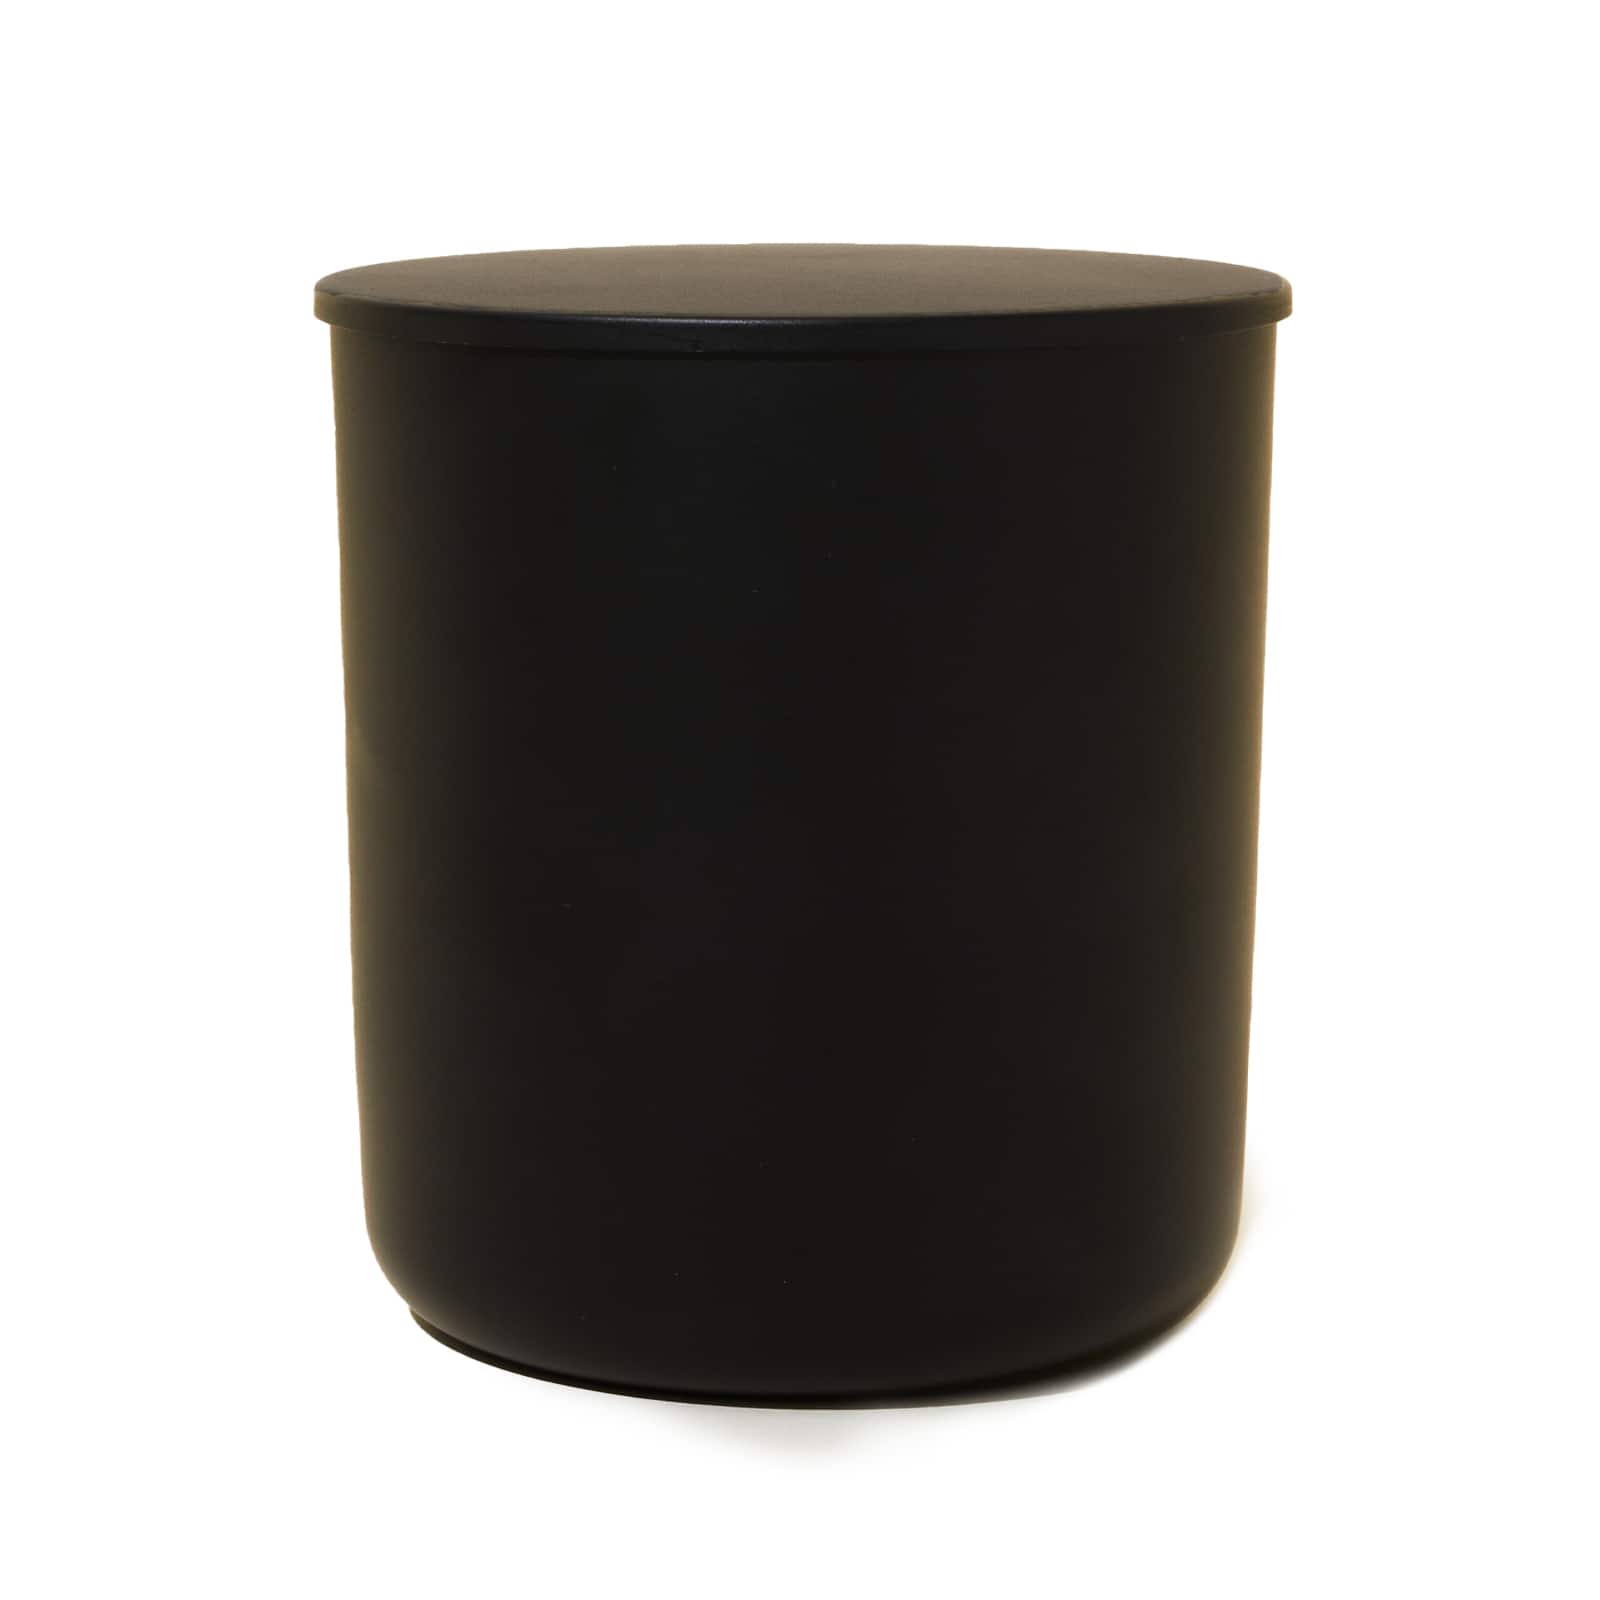 Classic Candle Jar w/ Flat Glass Lid, 8 oz